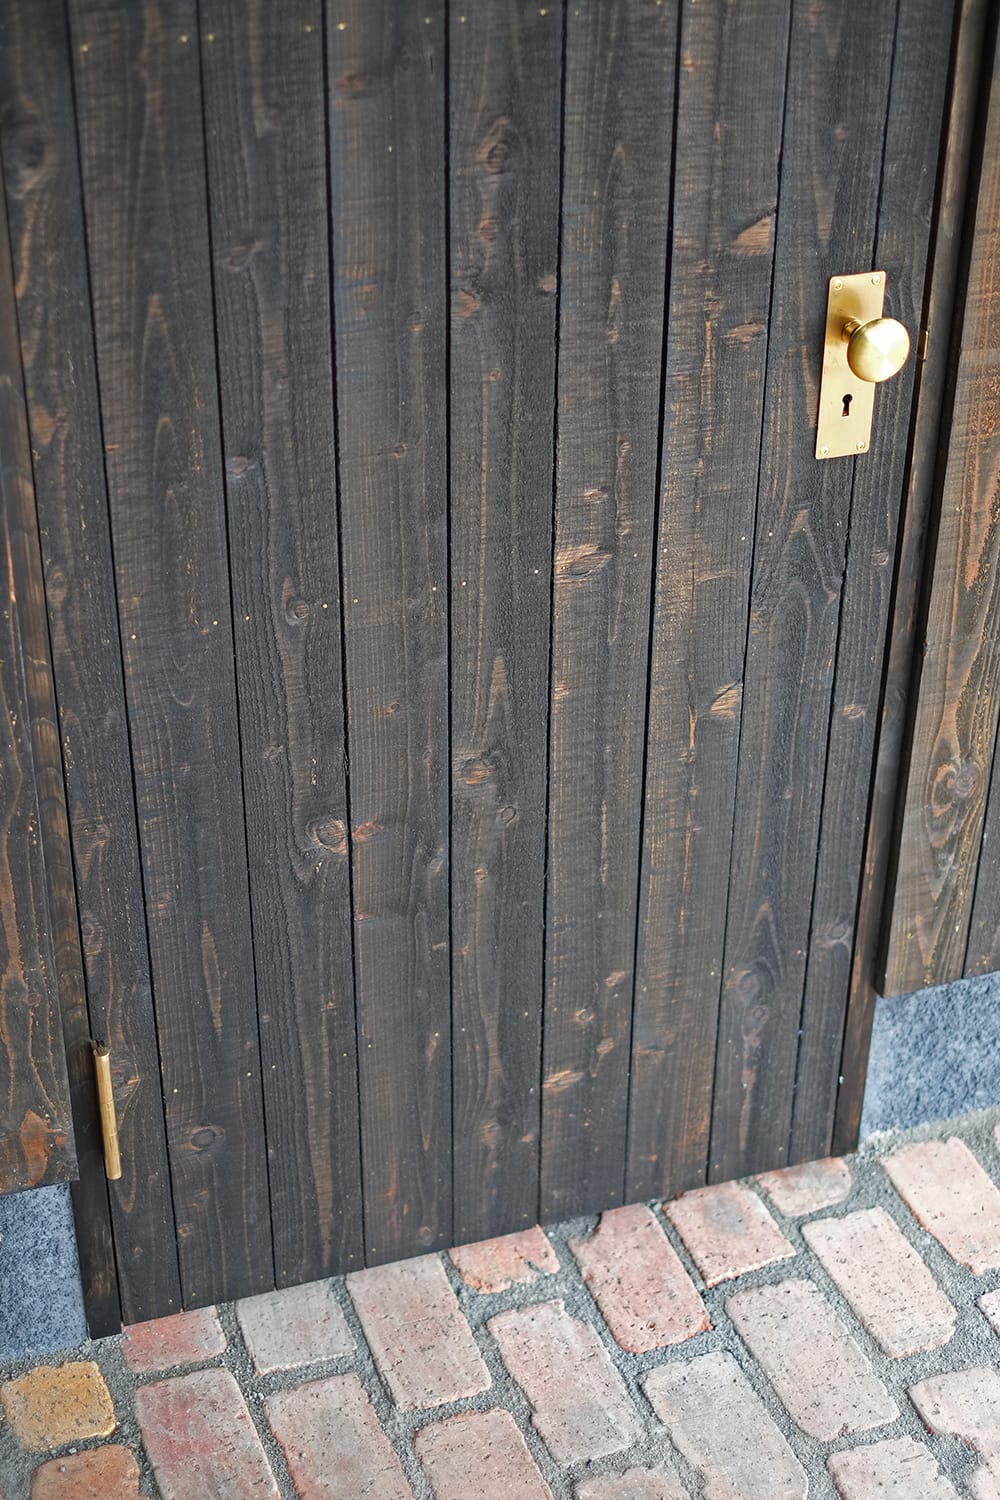 レンガ敷きの土間とカラマツ縦板張りのドアと真鍮製のドアノブ